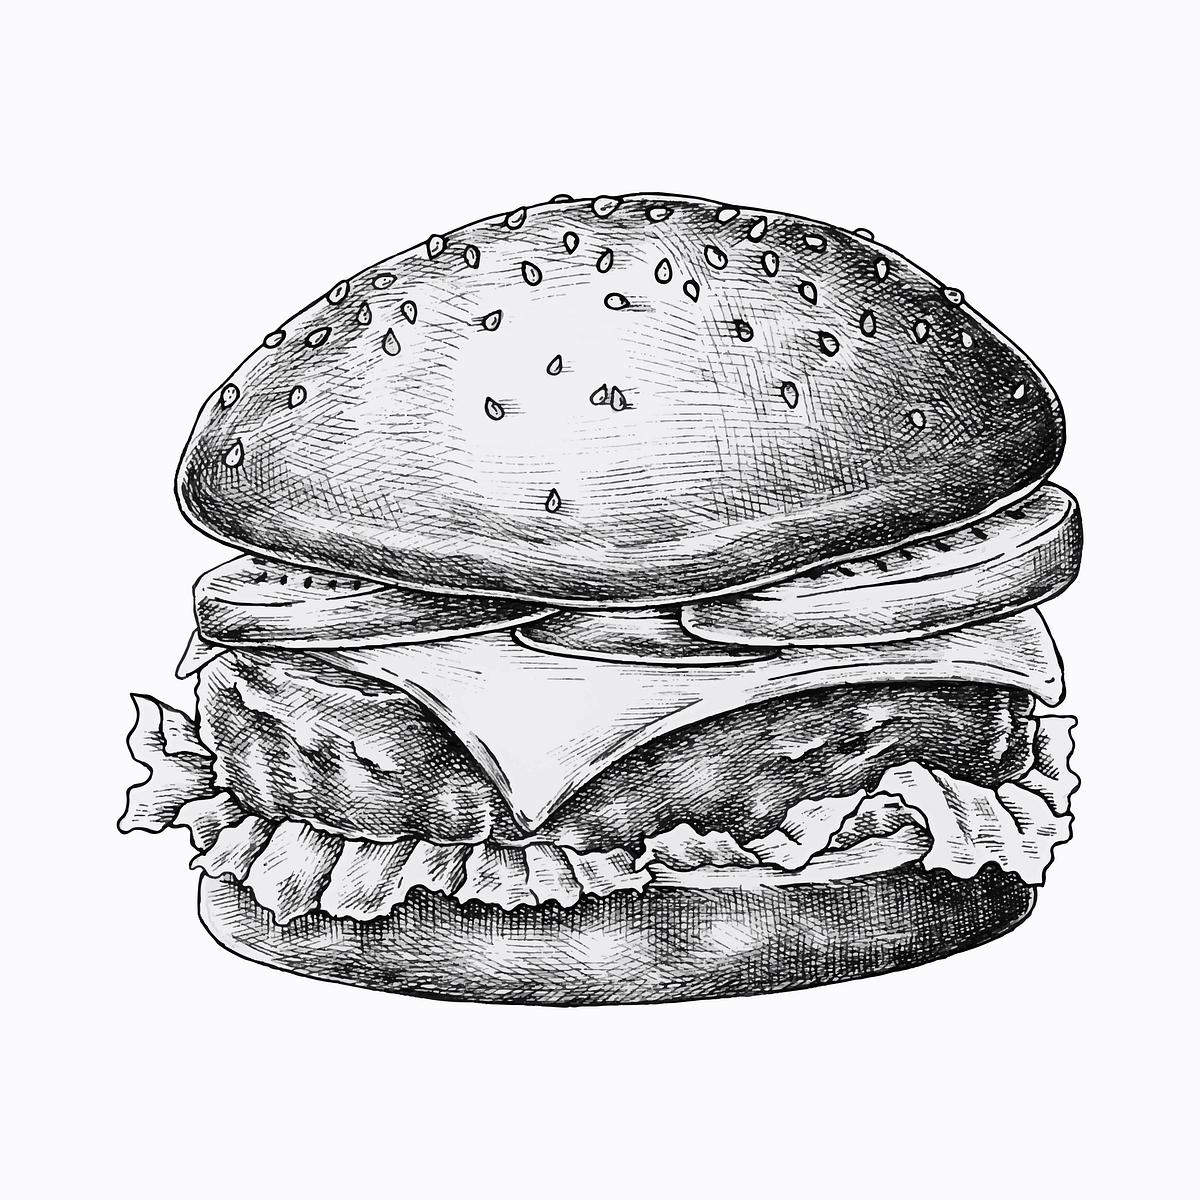 Cheeseburger ink drawing | Royalty free stock illustration - 1200241